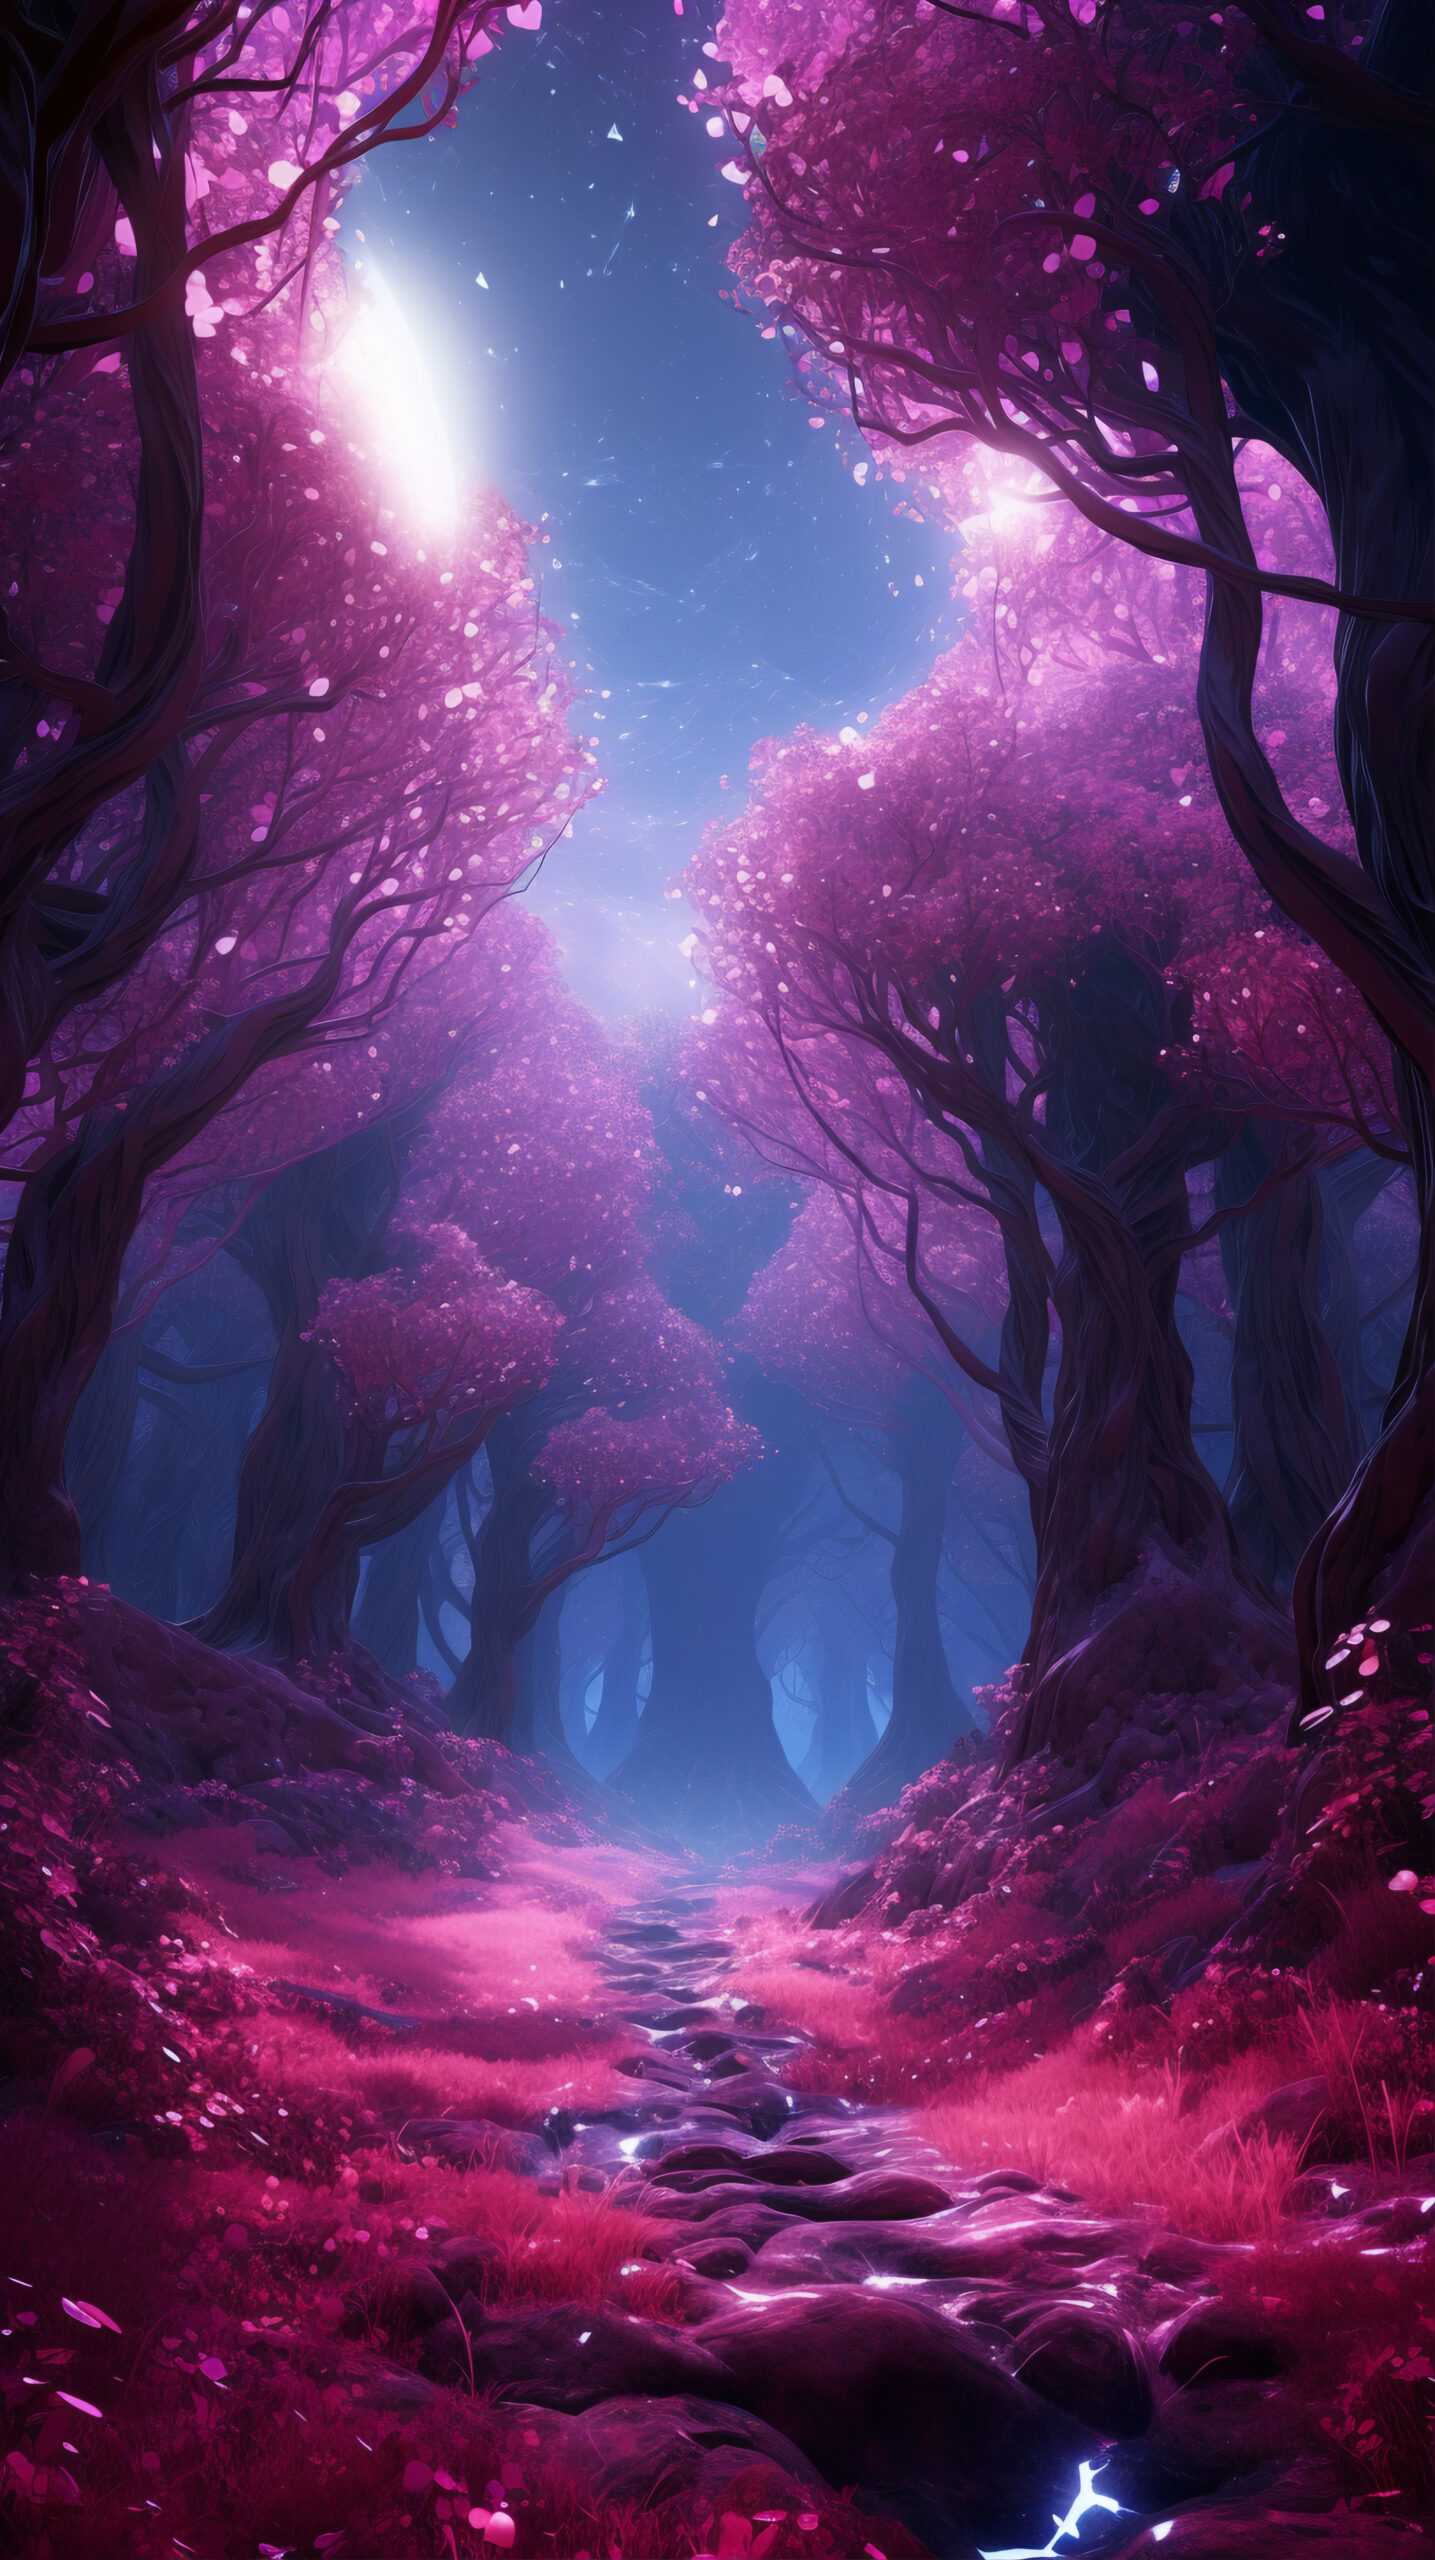 Grafika. Zaczarowany fioletowy las, w środku kompozycji ścieżka w odcieniach różu. Z lewej strony zza drzew wyłania się nocne niebo i księżyc.